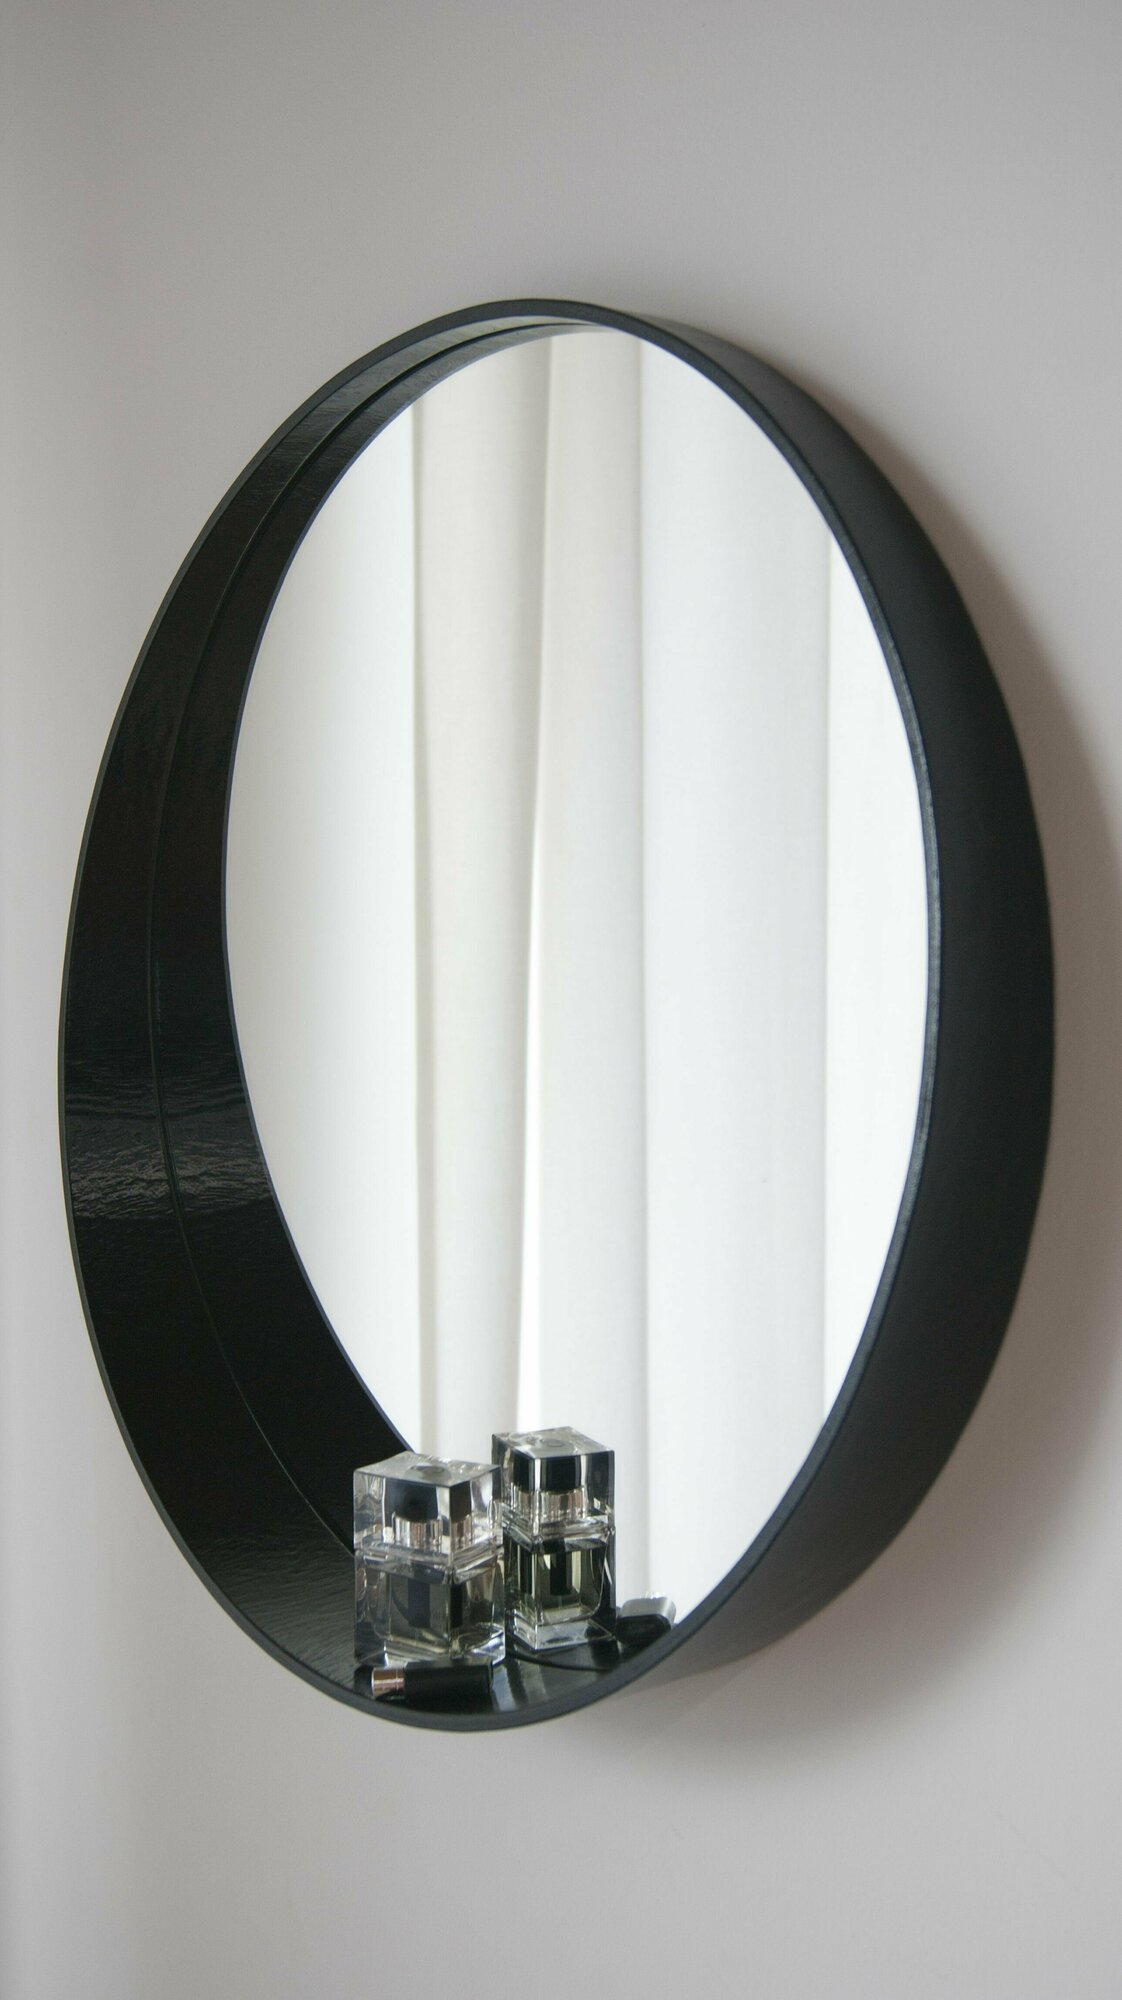 Зеркало круглое настенное интерьерное, черное, зеркало в ванную, интерьерное зеркало в деревянной раме